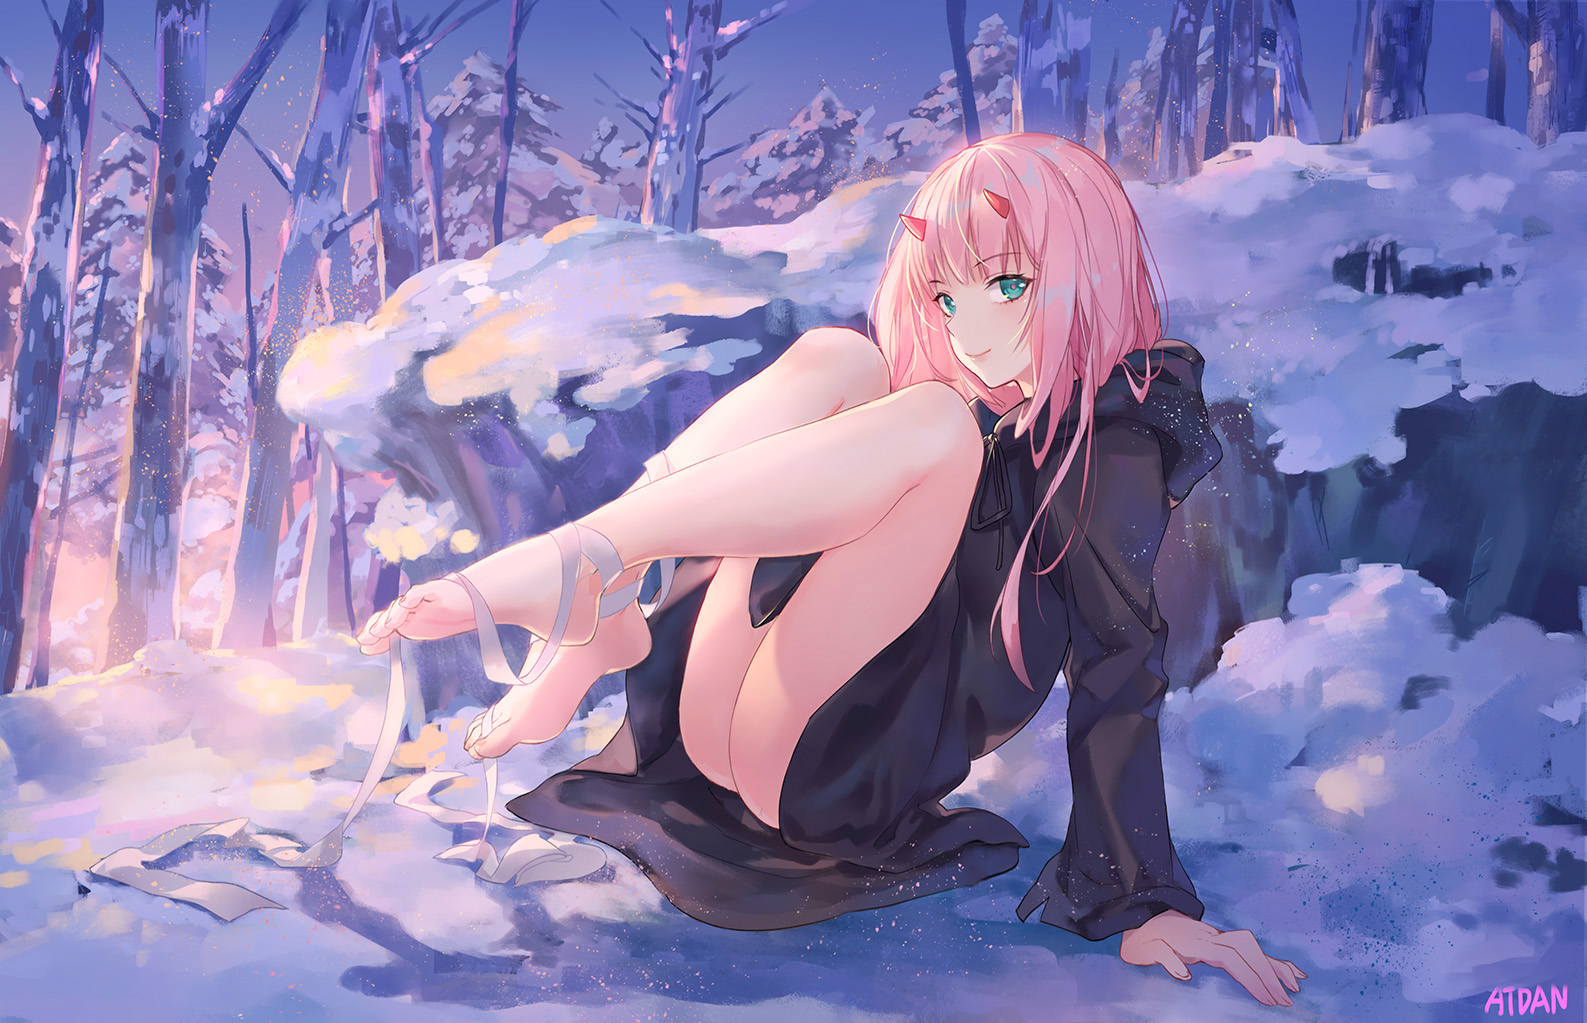 Anime 1587x1023 anime girls Atdan Darling in the FranXX Zero Two (Darling in the FranXX) anime snow fan art feet barefoot